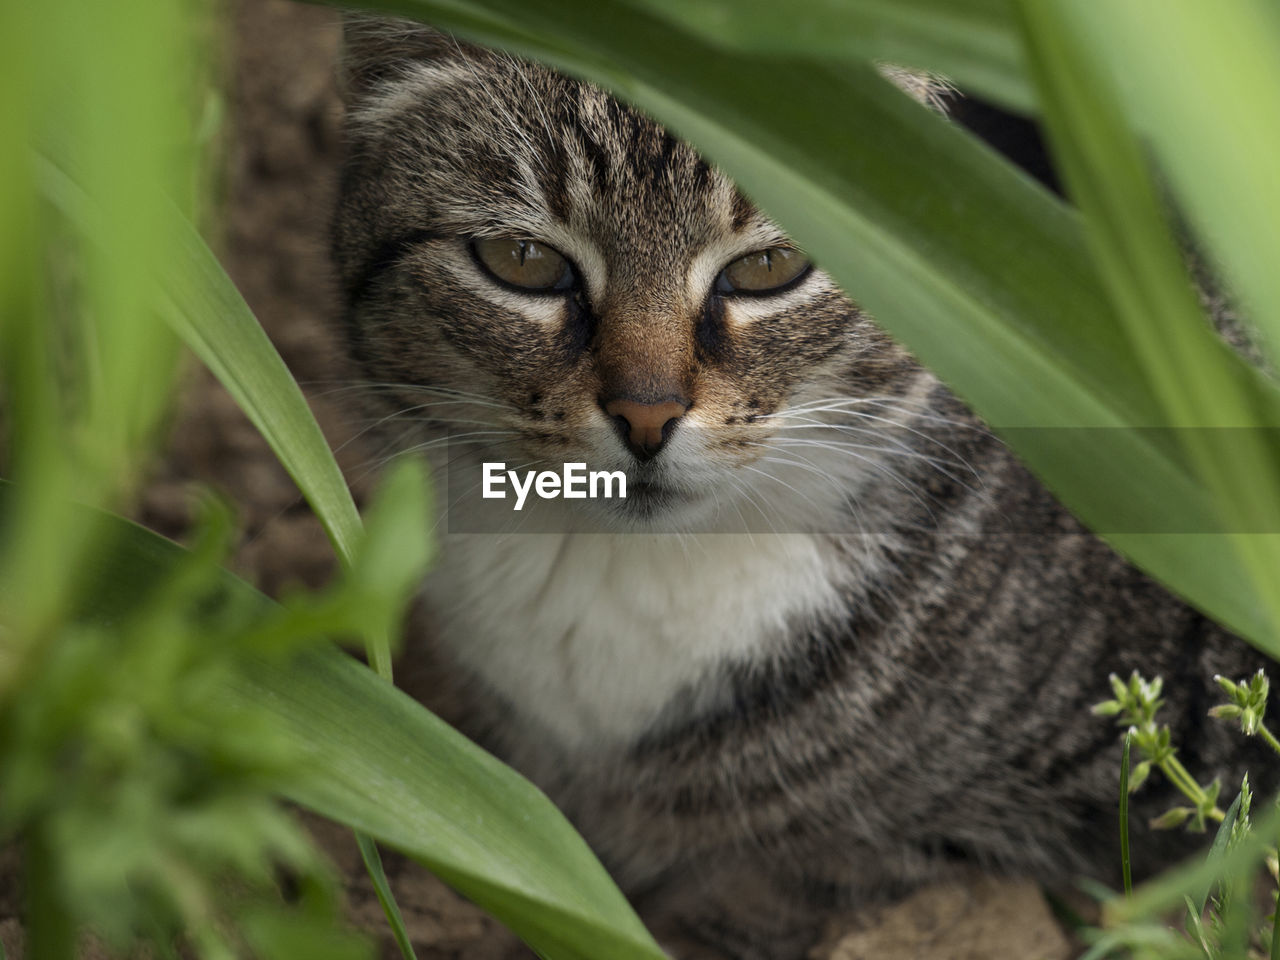 Portrait of cat sitting by plants on field